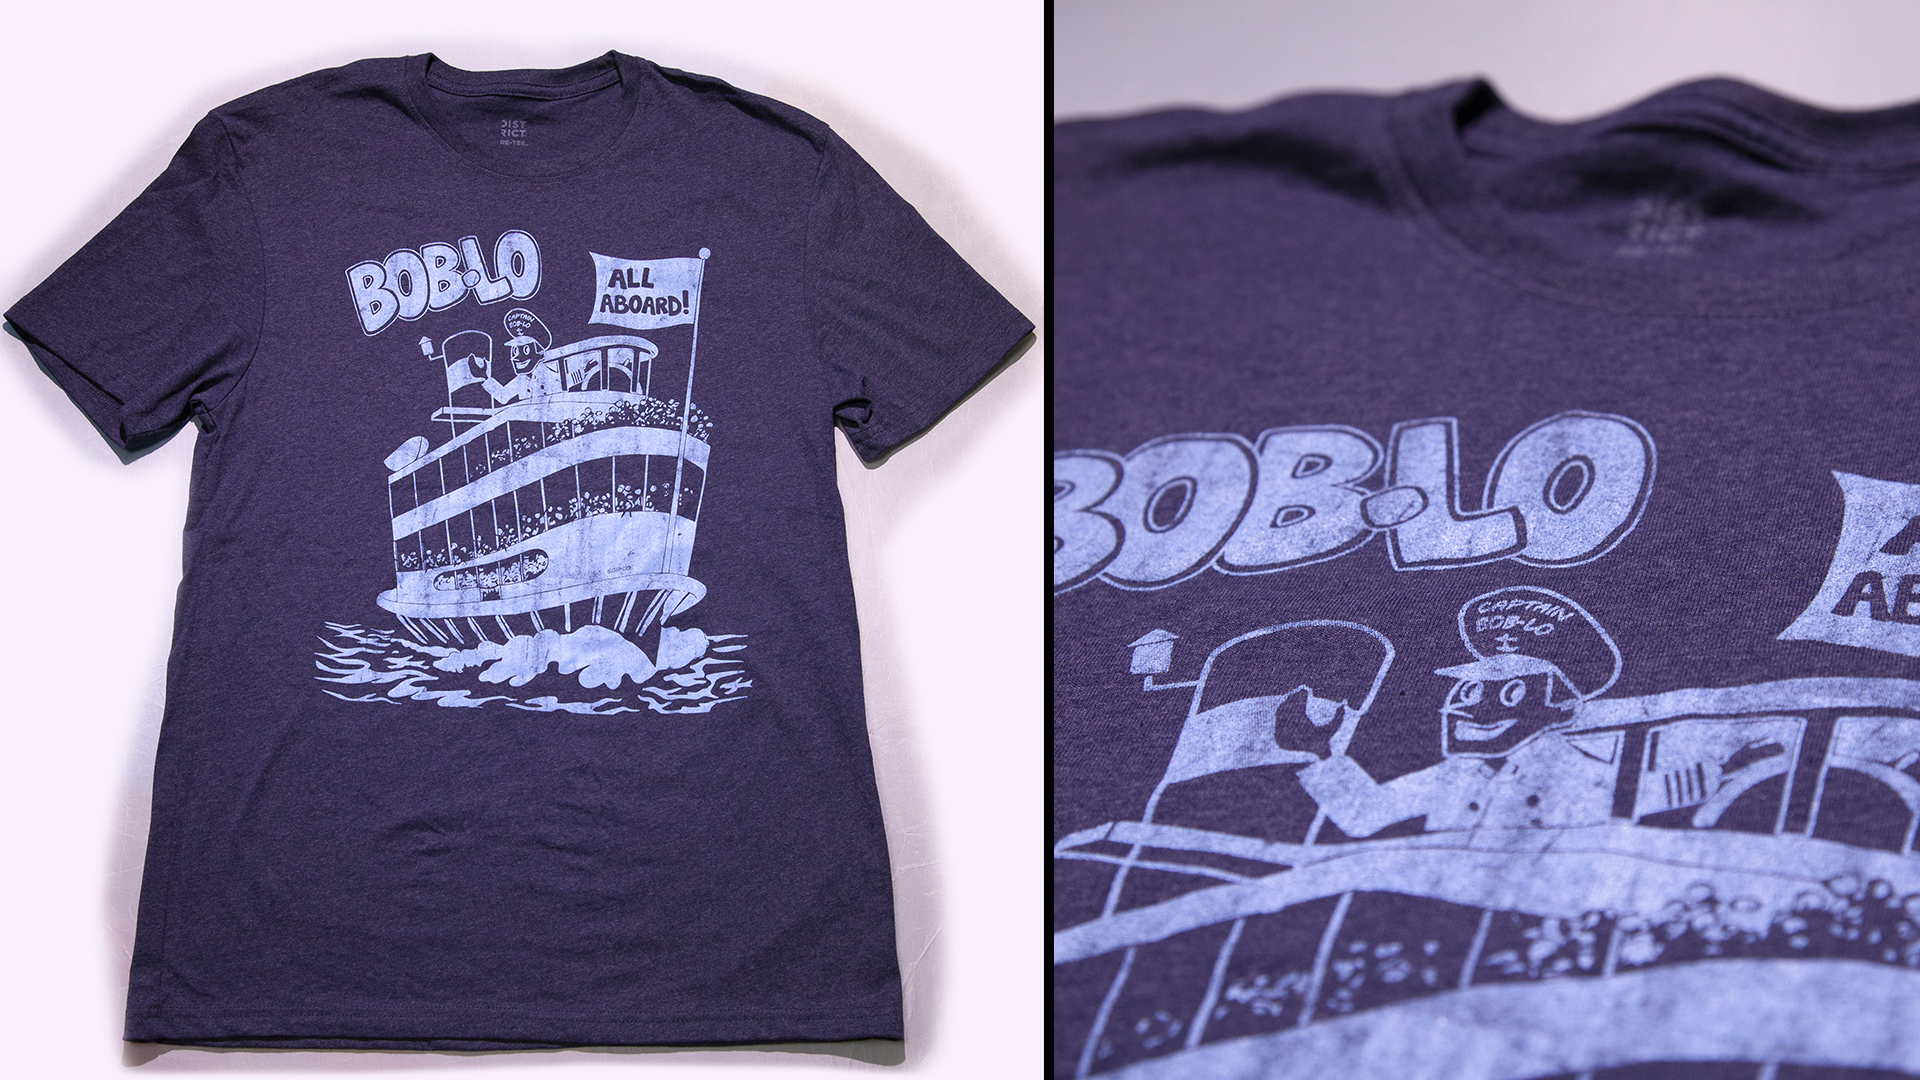 buy Boblo t shirt